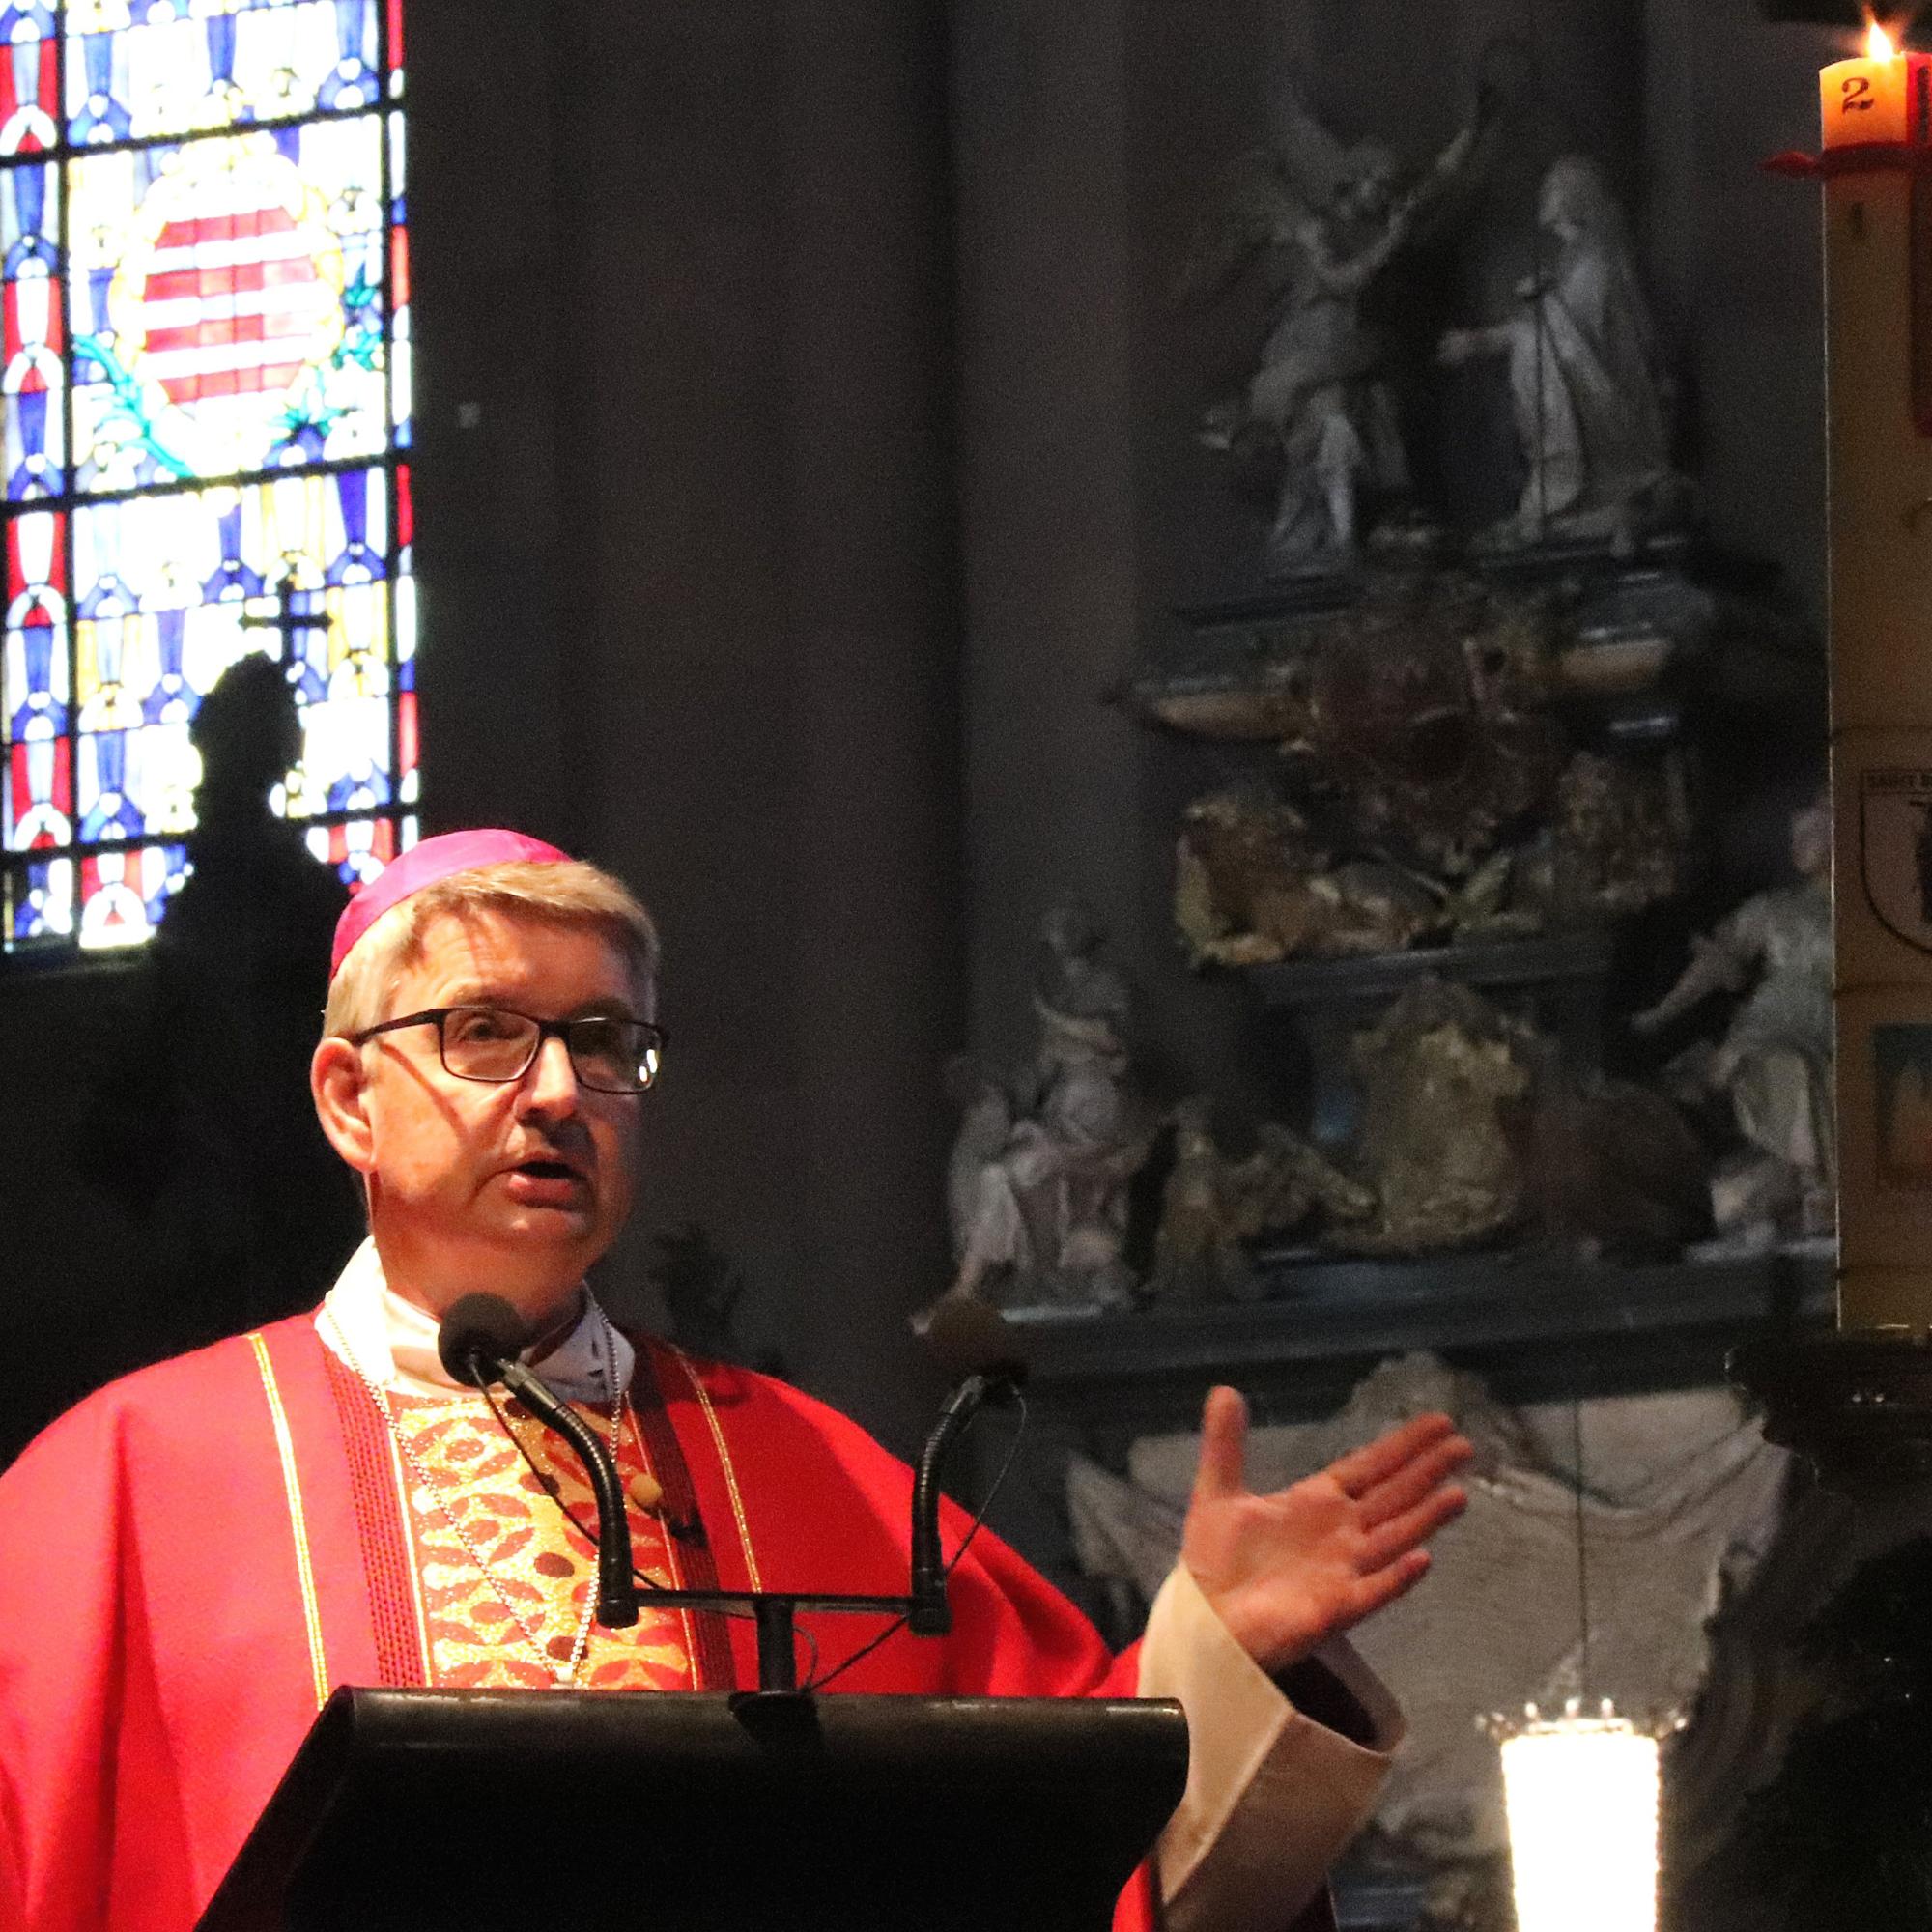 Mainz, 9.6.2019: Bischof Peter Kohlgraf rief dazu auf, für den Pastoralen Weg die Türen aufzumachen und aufzubrechen.